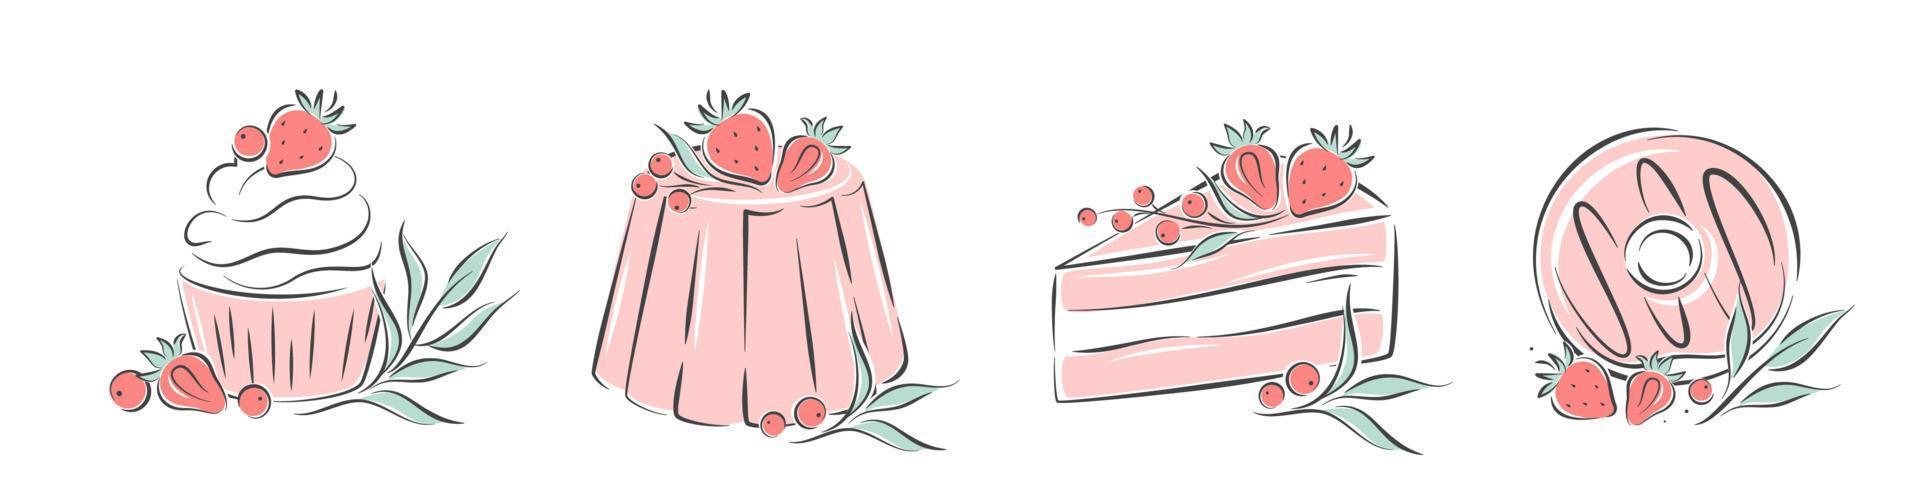 colección de postres con diferentes ingredientes. conjunto de pasteles dulces, cupcakes y donuts. ilustración vectorial aislado sobre fondo blanco vector